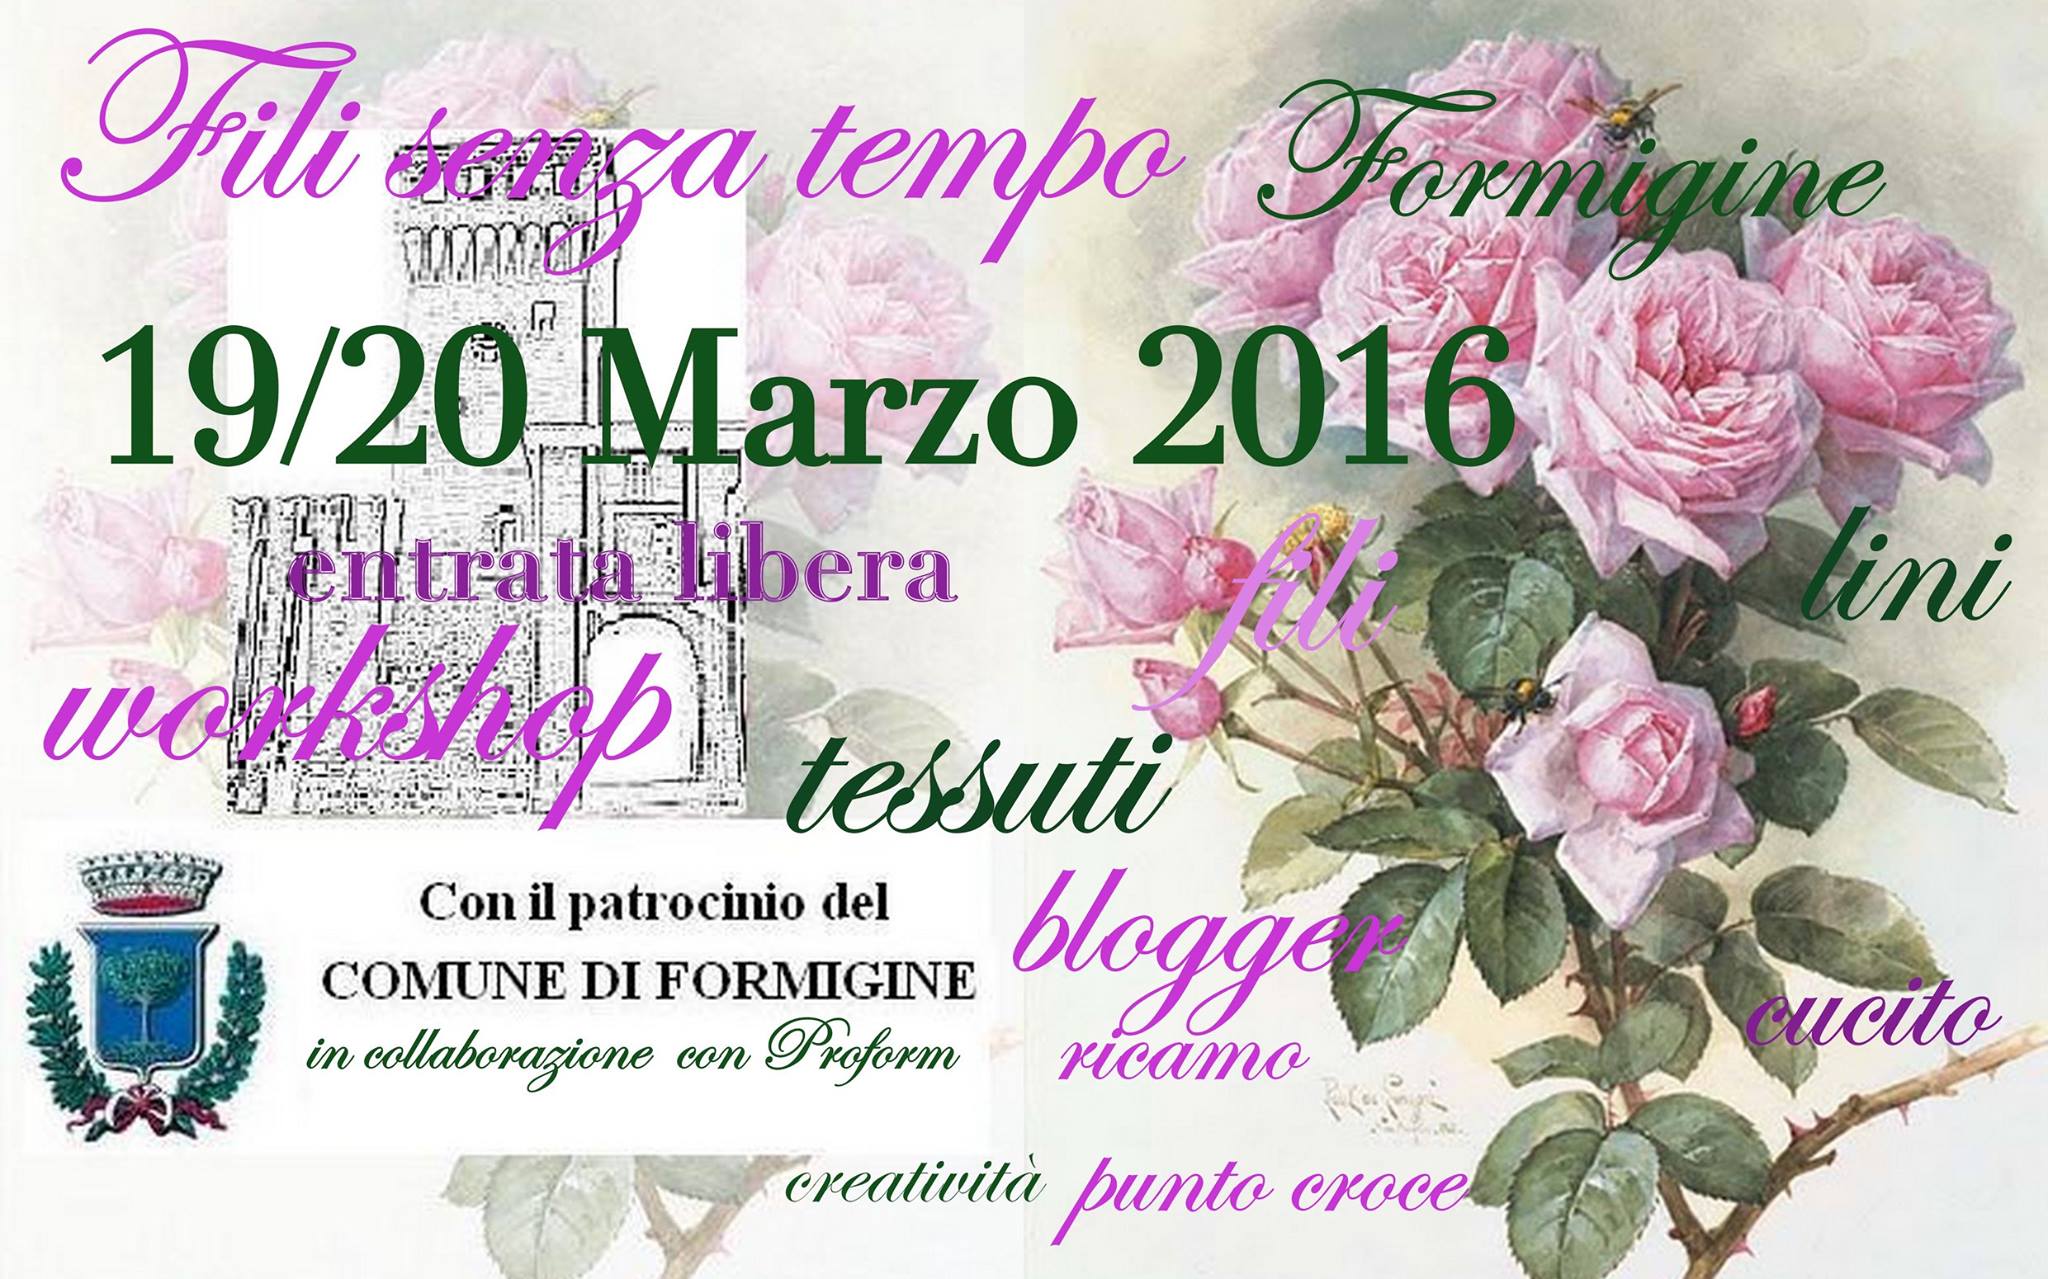 Fili senza tempo - Formigine @ Castello di Formigine | Emilia-Romagna | Italia